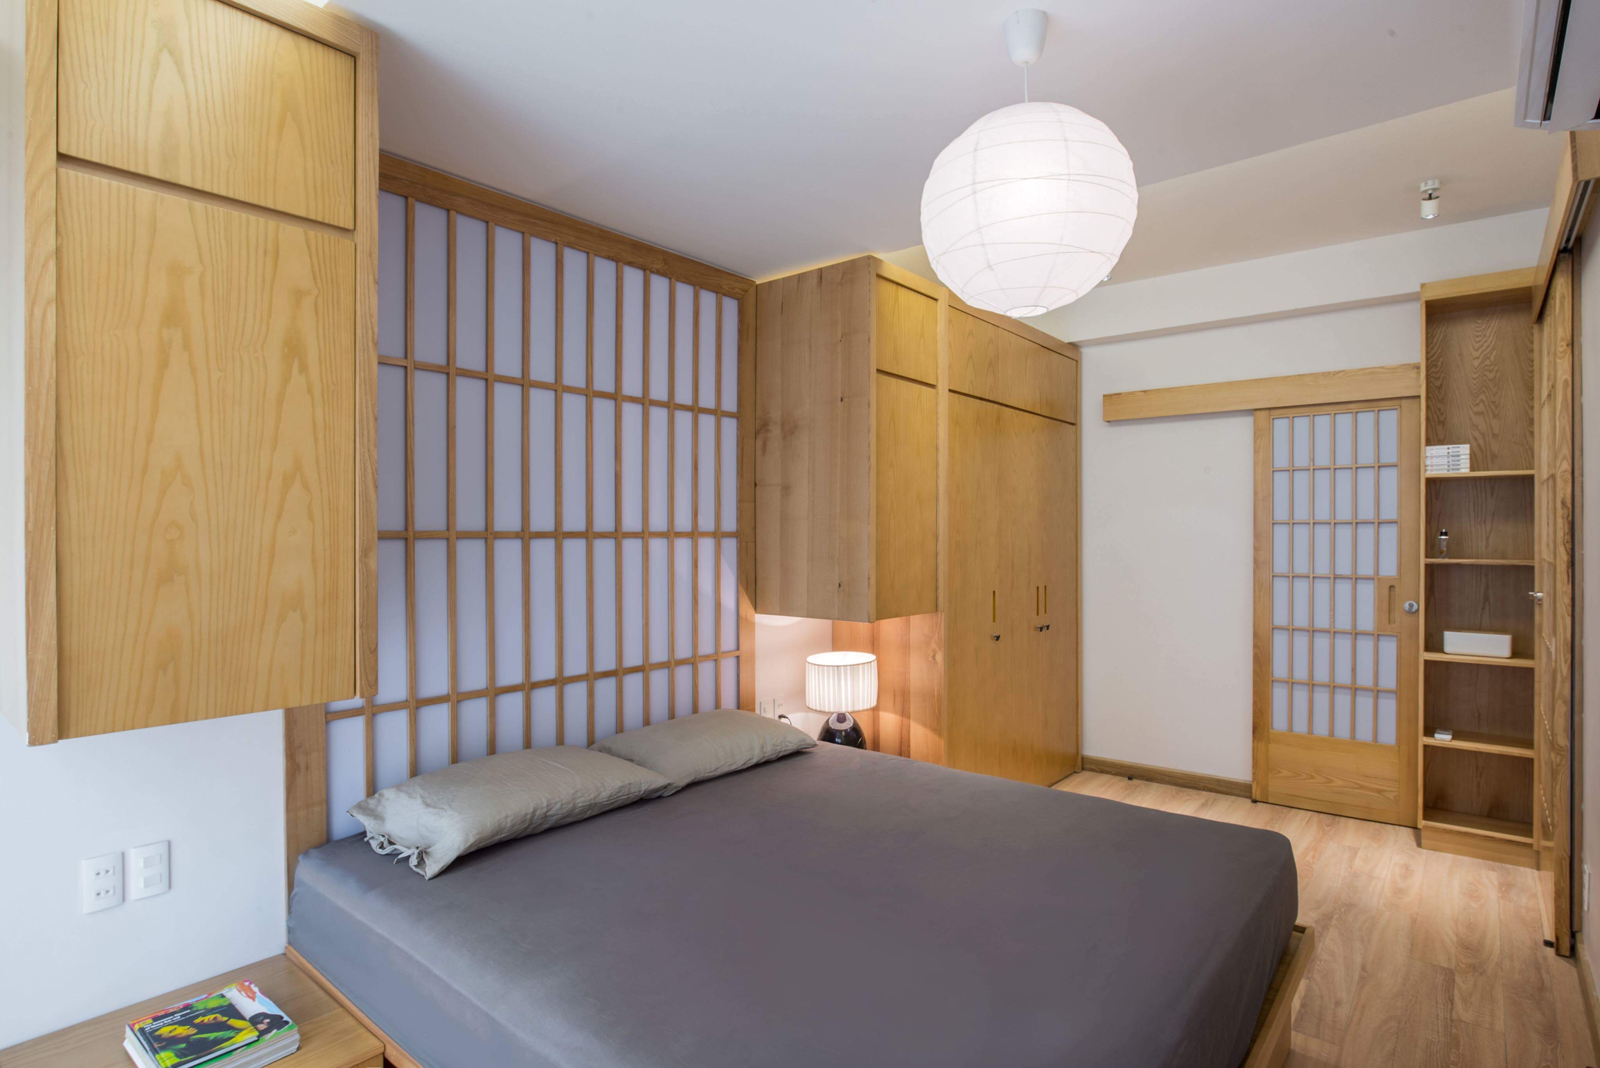 Phòng ngủ thiết kế tối giản với gam màu trung tính, giống như những căn nhà gỗ cổ truyền ở Nhật.